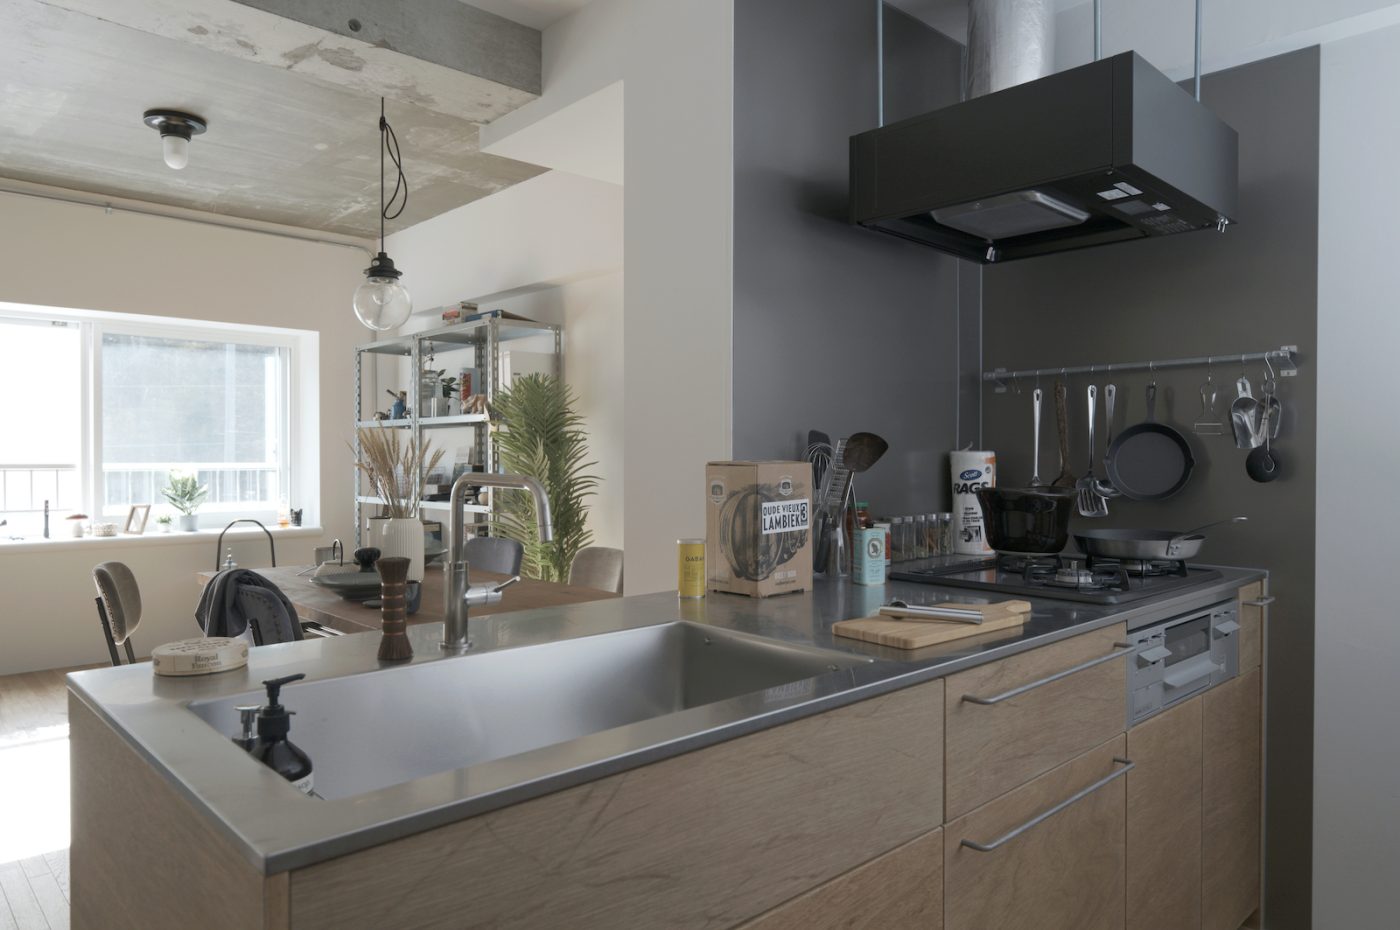 ラワンでつくられた家具のような親しみやすいキッチンがASSYの標準仕様。